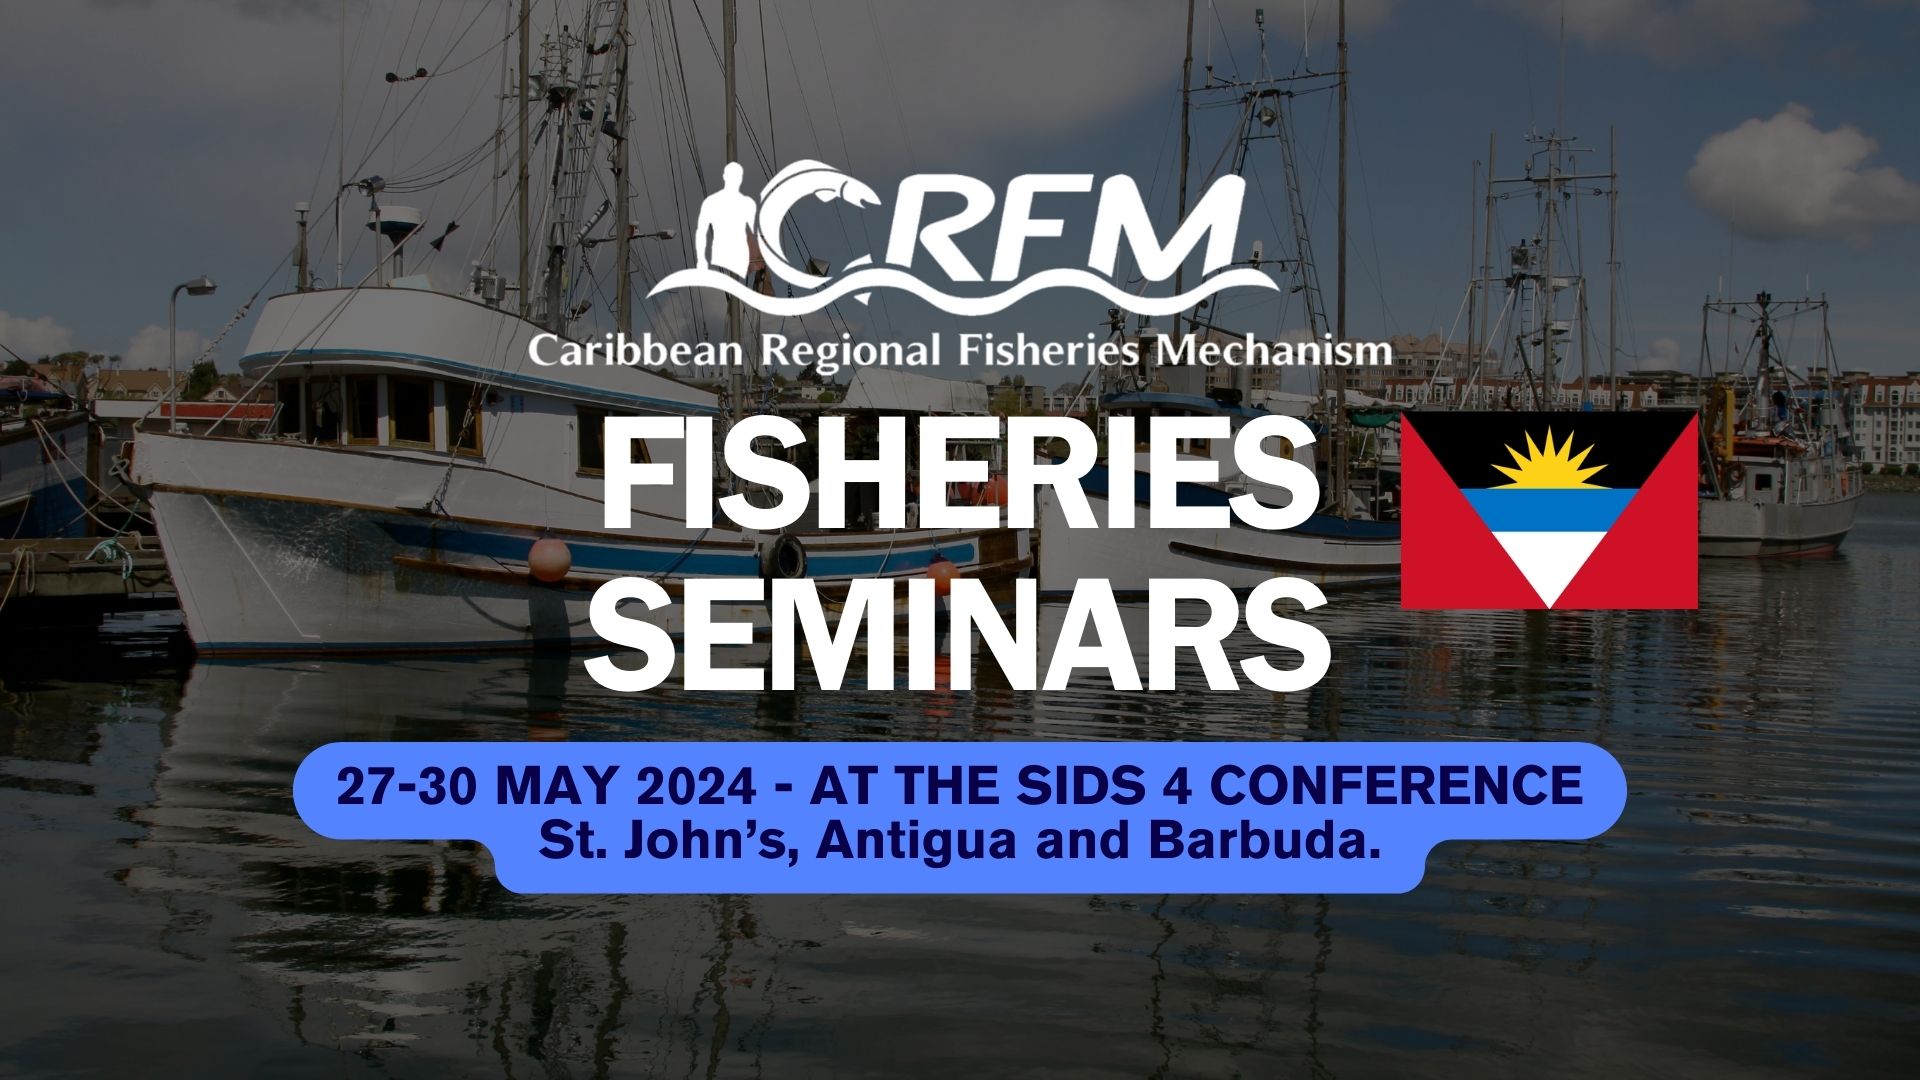 Junte-se a nós nos seminários sobre pesca durante a Conferência SIDS4 em Antígua e Barbuda Green Initiative